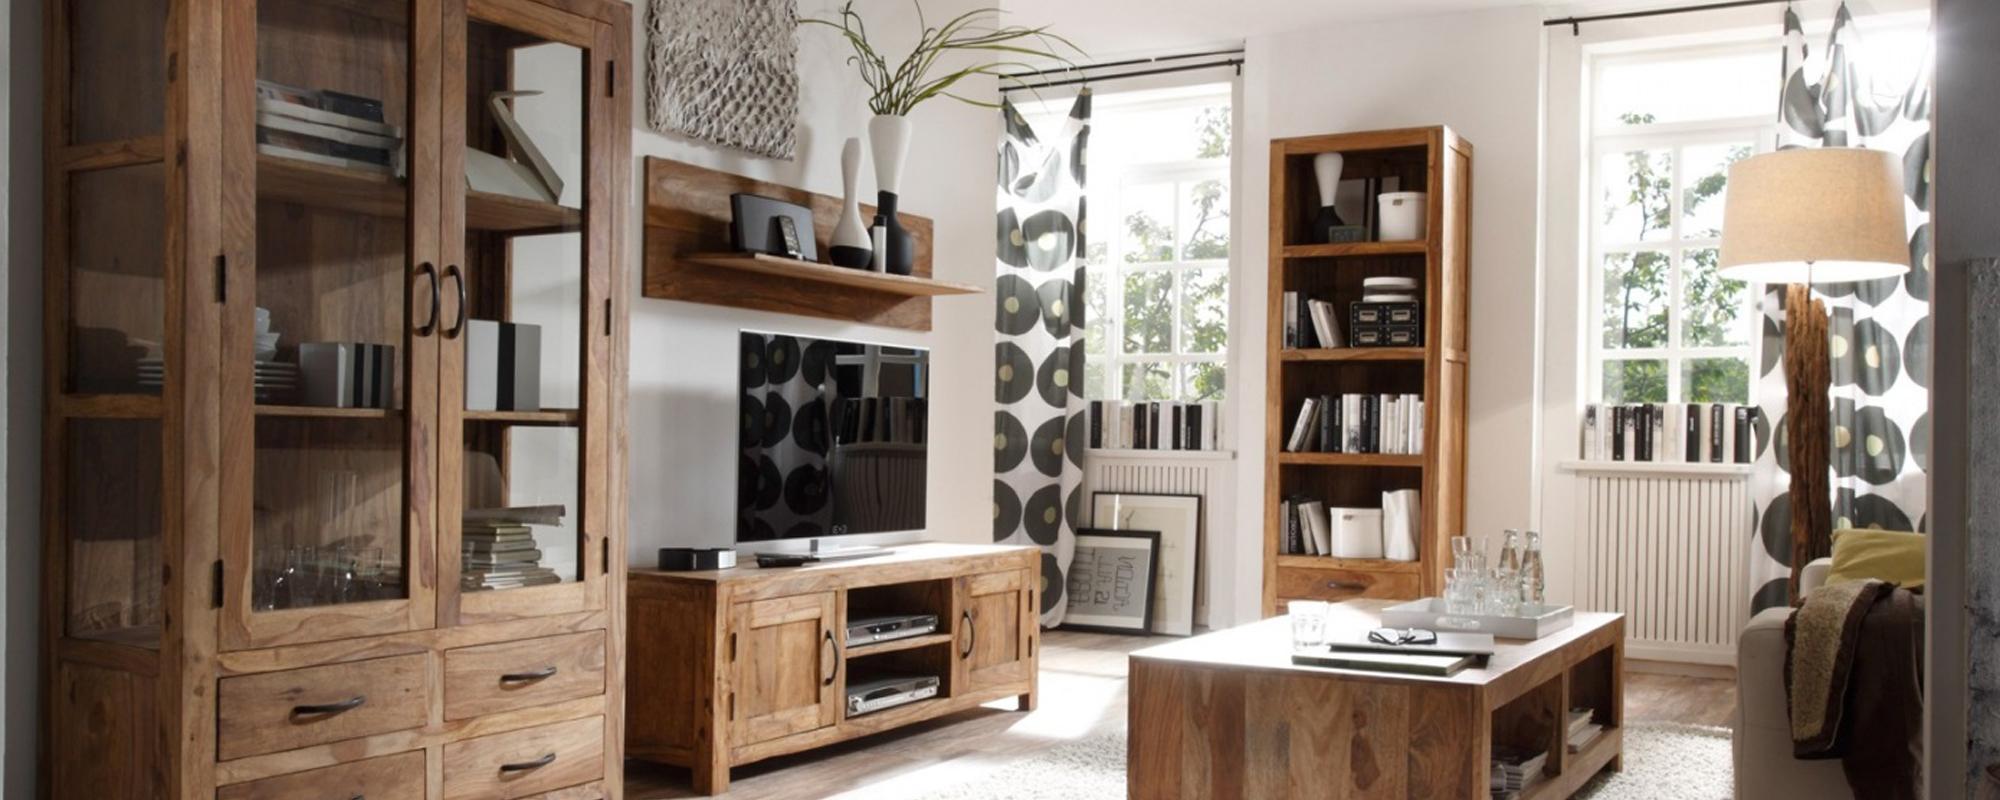 Objavte exotický luxus s nábytkom z palisandru: jedinečné kúsky pre váš domov